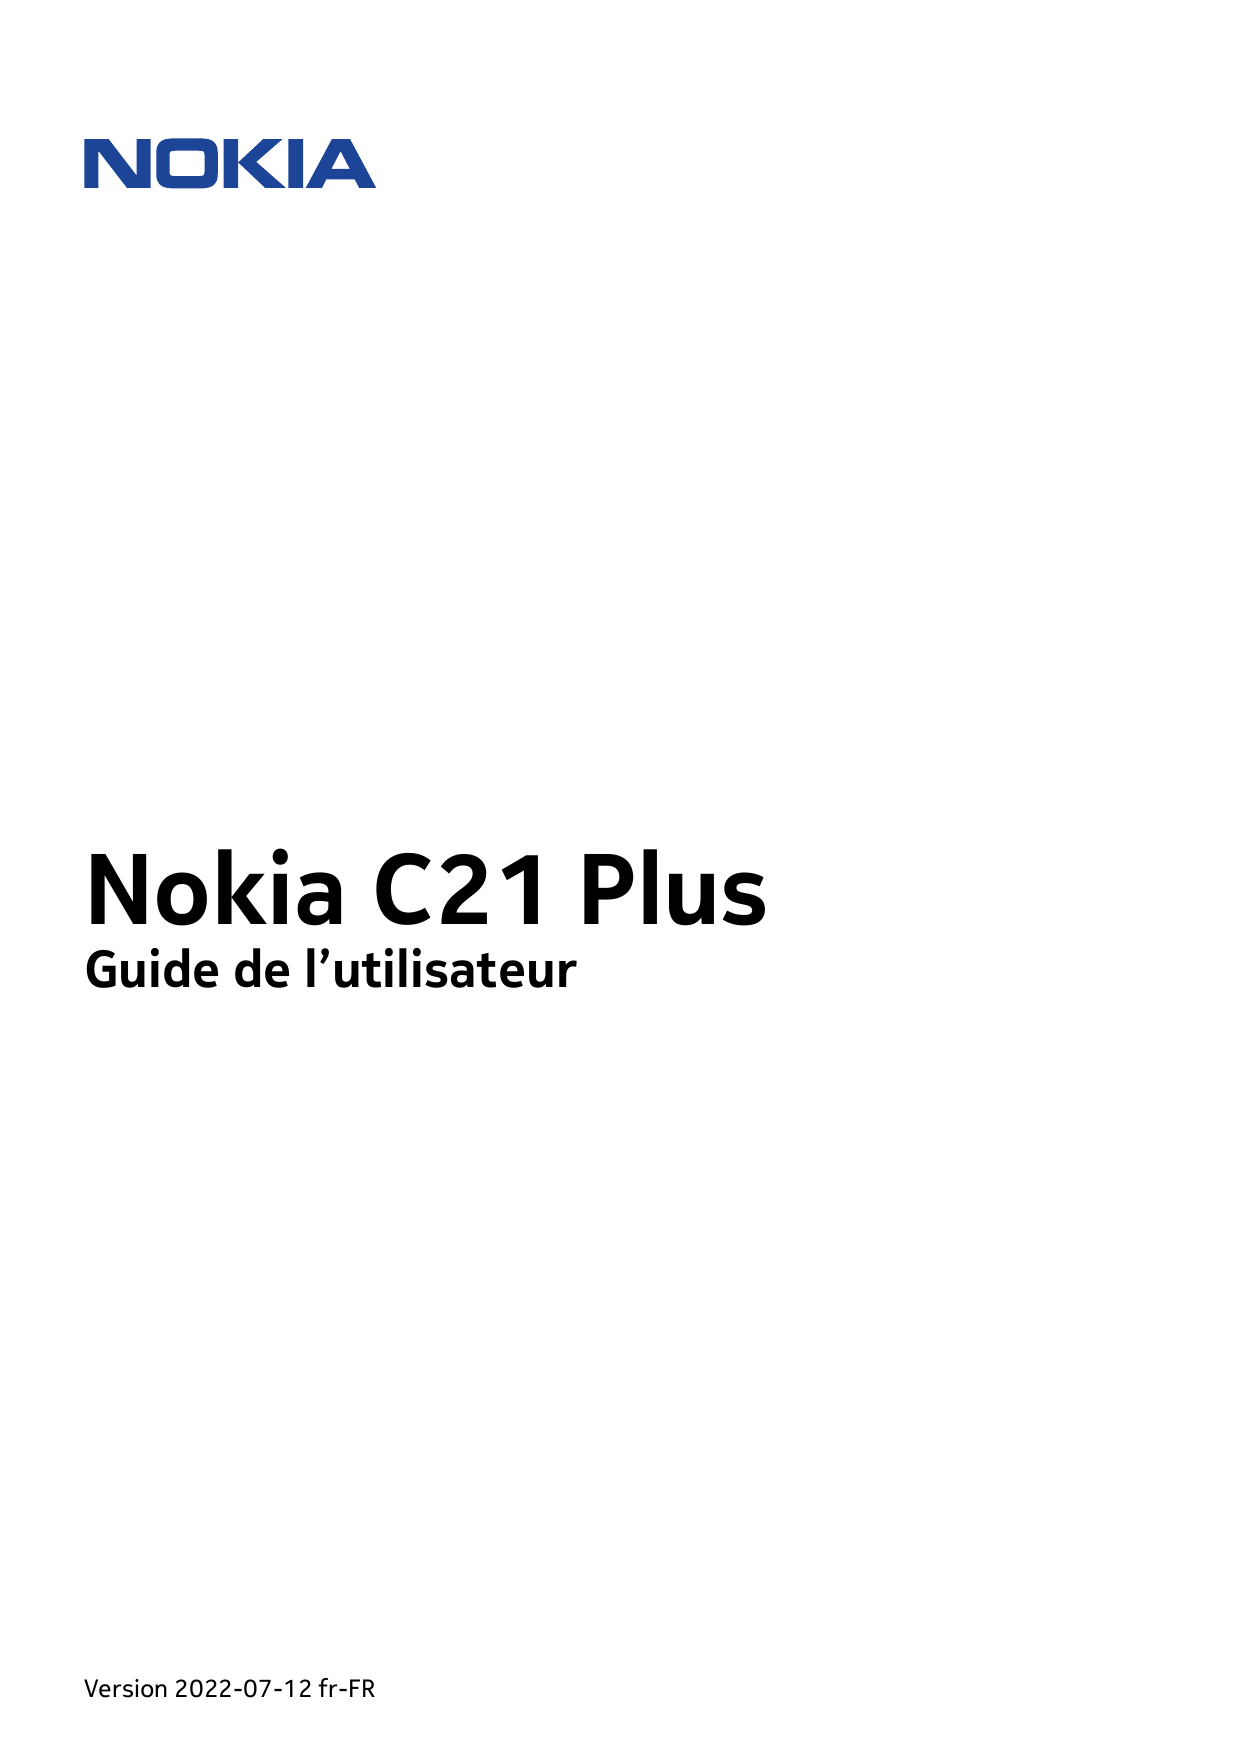 Nokia C21 PlusGuide de l’utilisateurVersion 2022-07-12 fr-FR